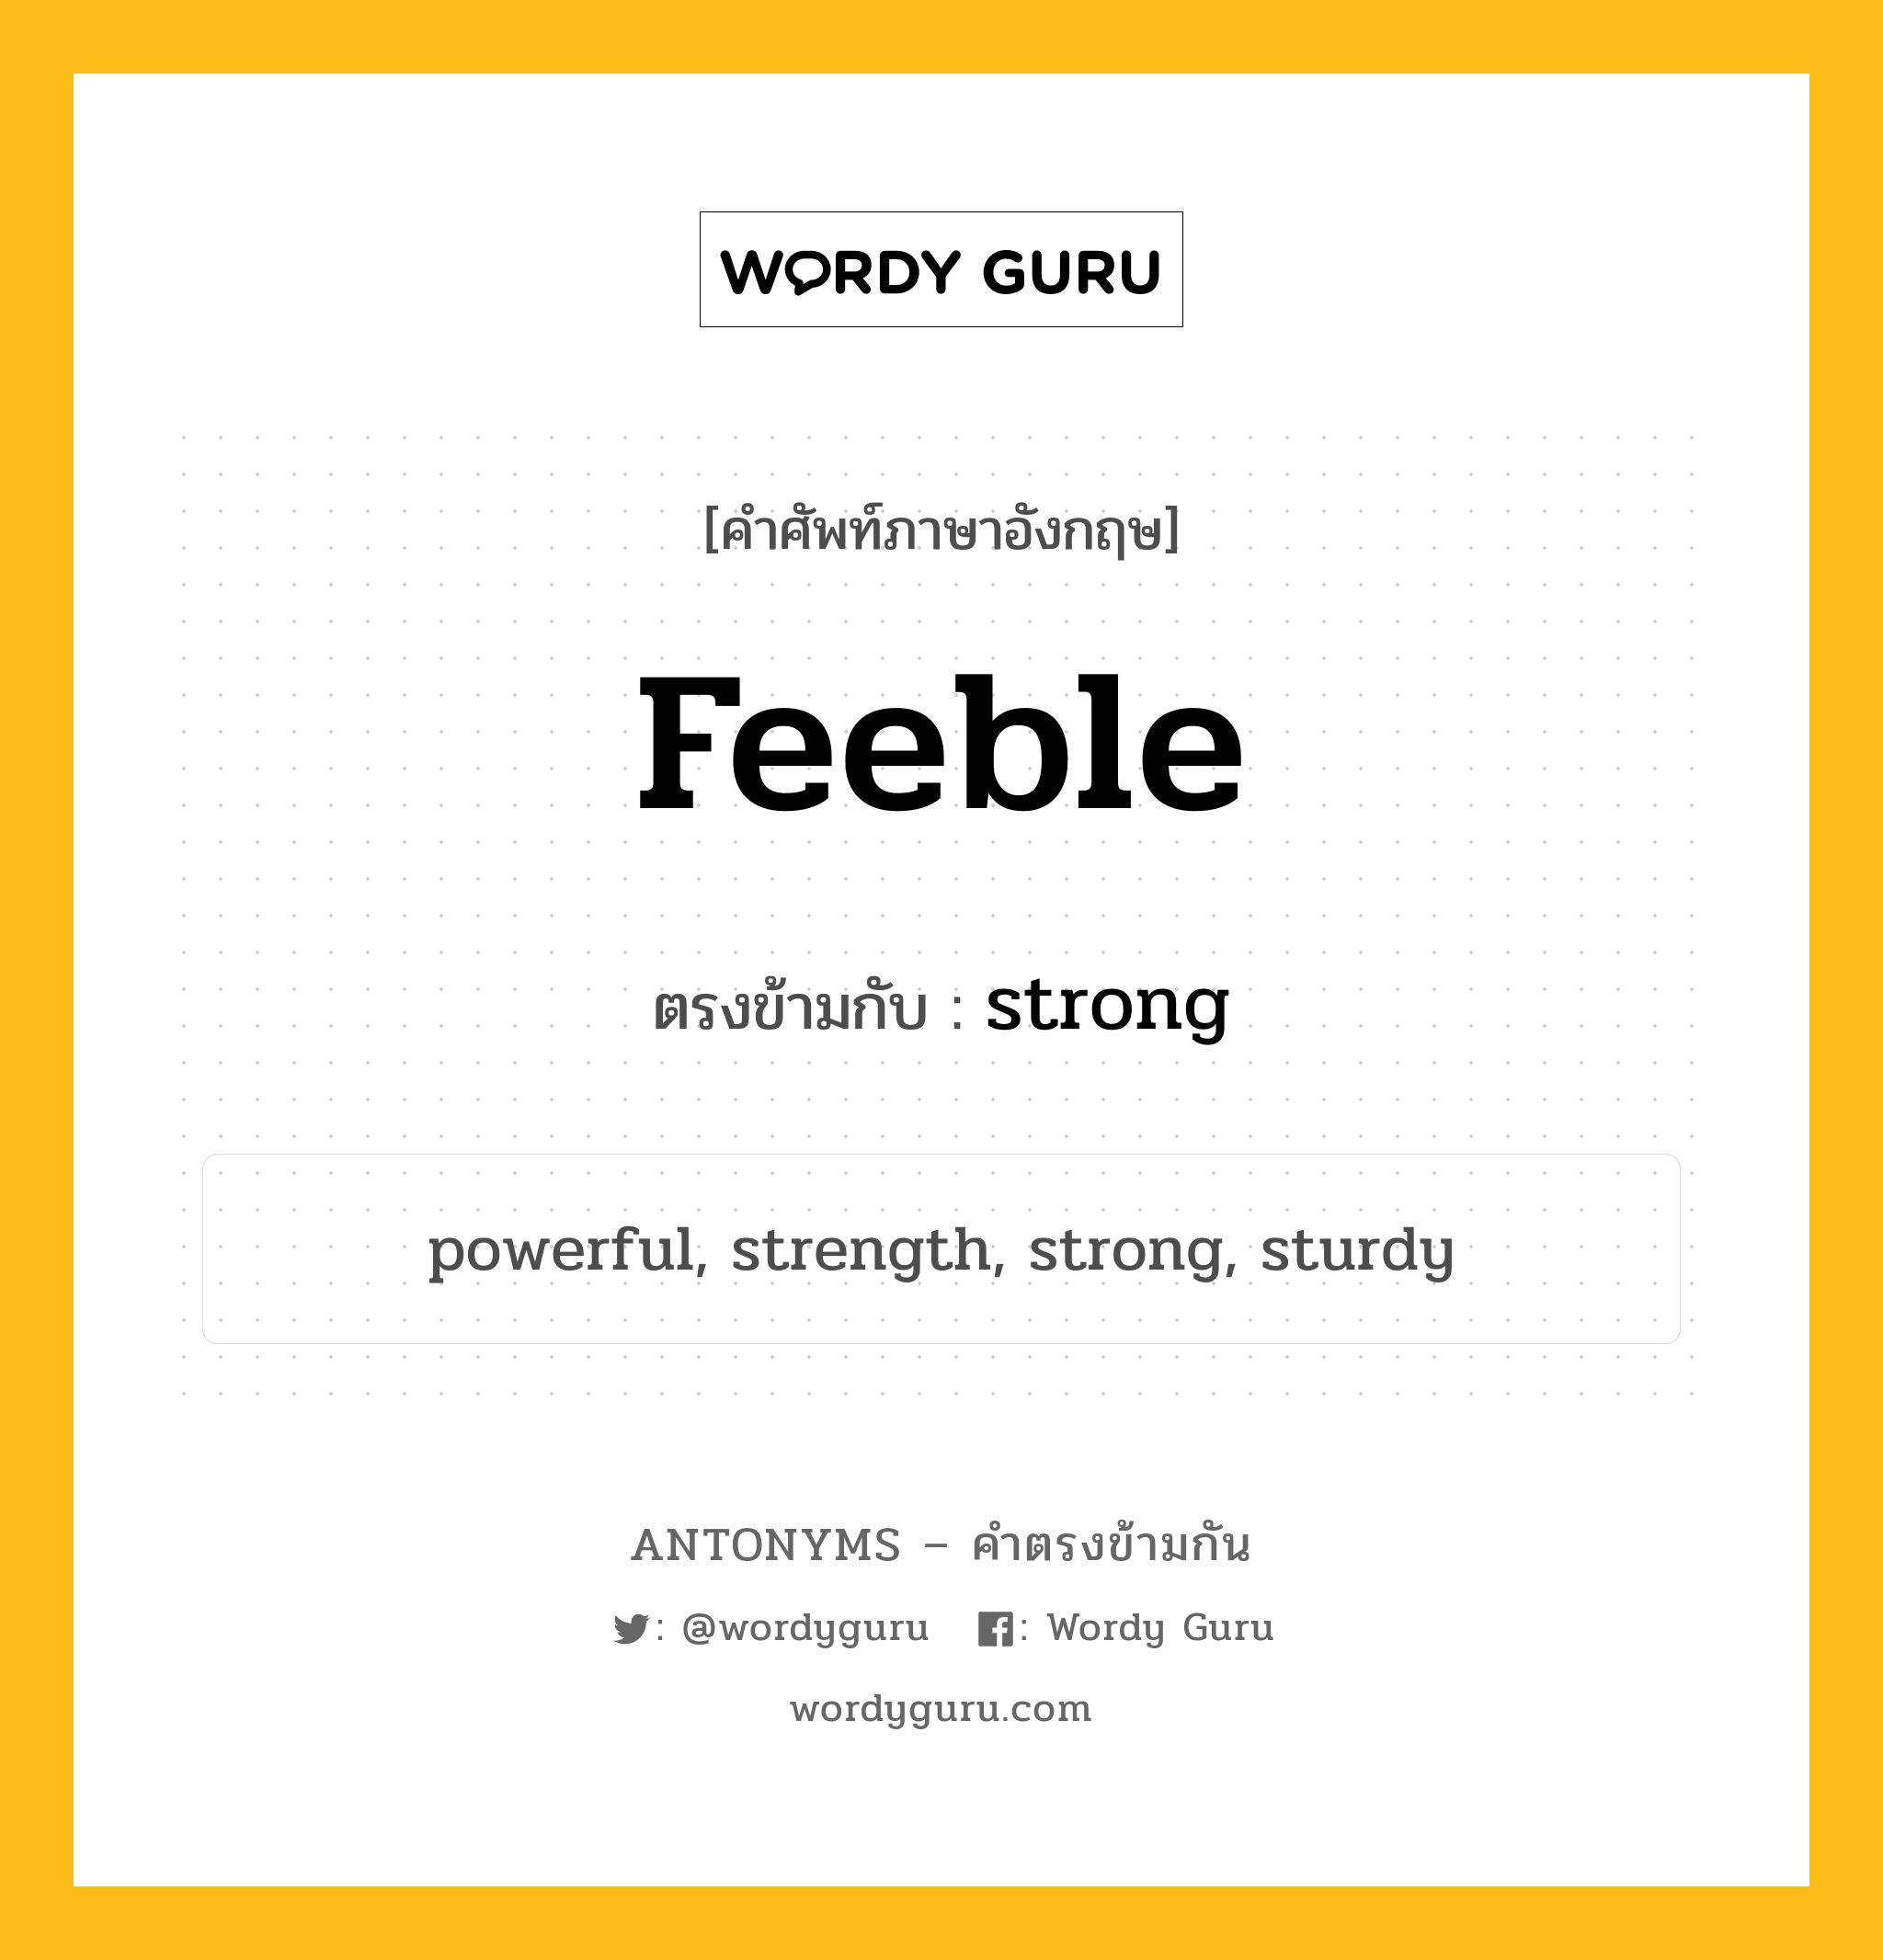 feeble เป็นคำตรงข้ามกับคำไหนบ้าง?, คำศัพท์ภาษาอังกฤษ feeble ตรงข้ามกับ strong หมวด strong